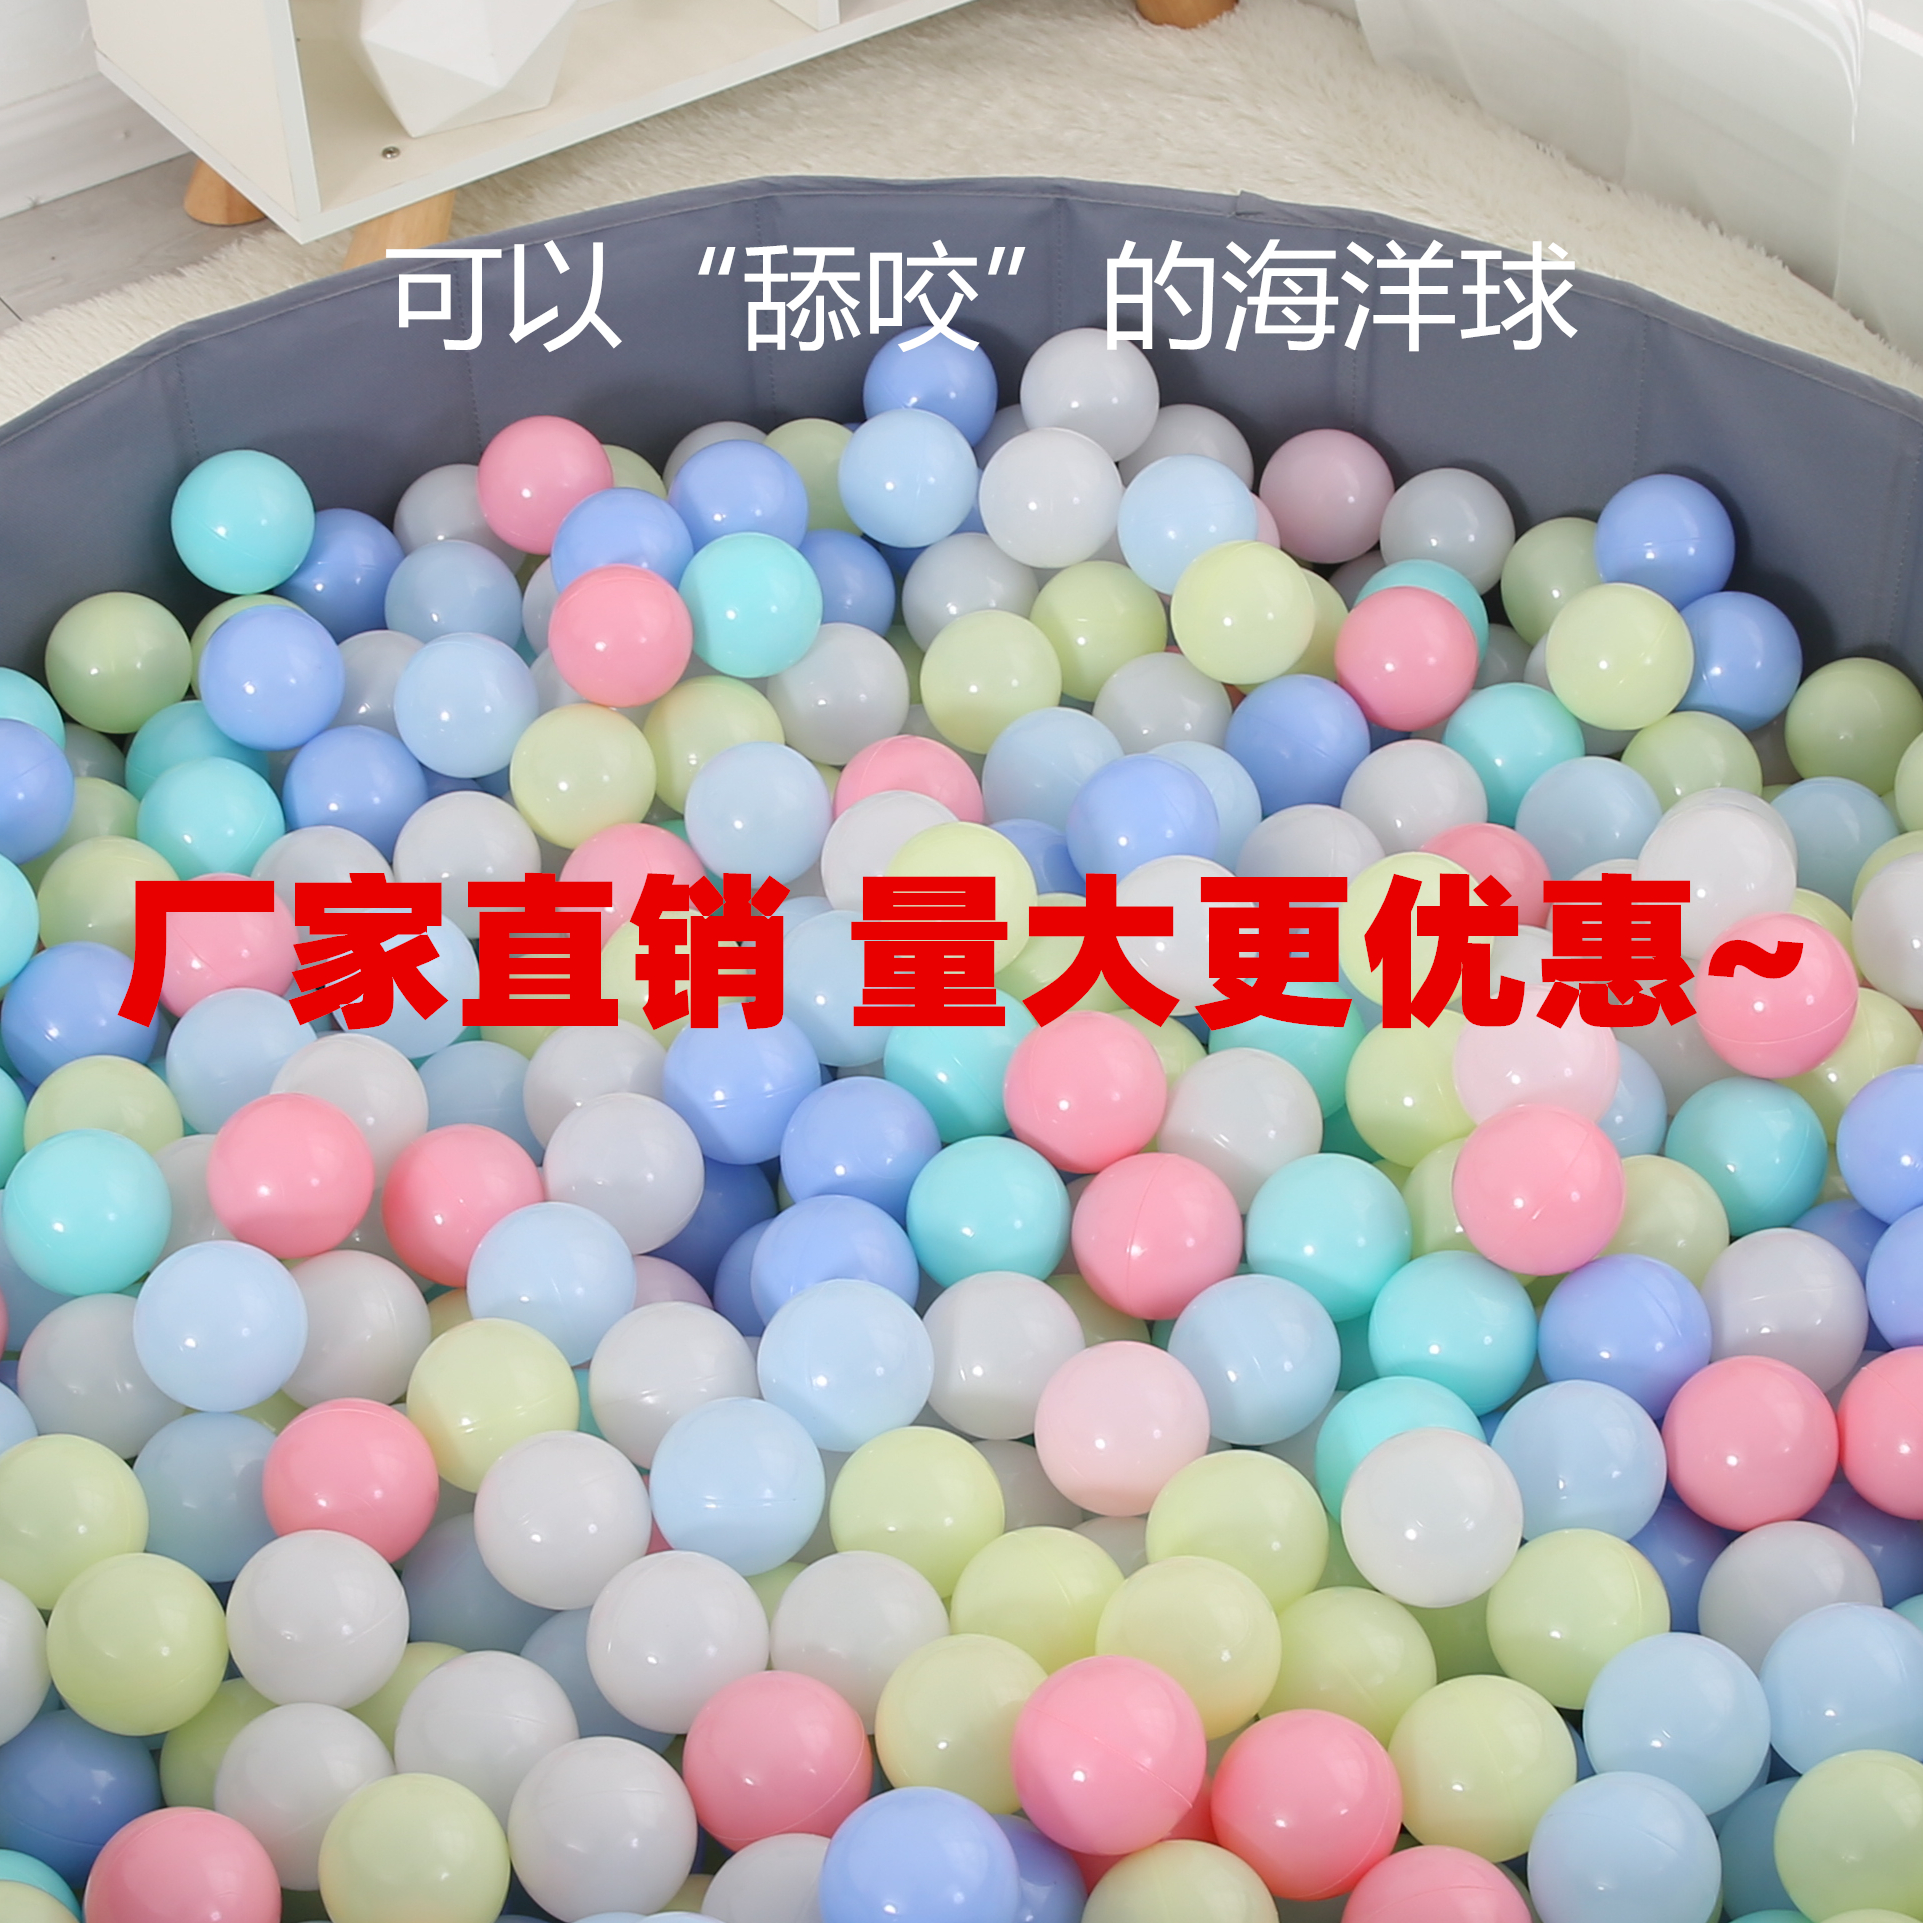 加厚海洋球7.0cm厂家直销户外游乐场淘气堡8.0cm波波球彩色玩具球